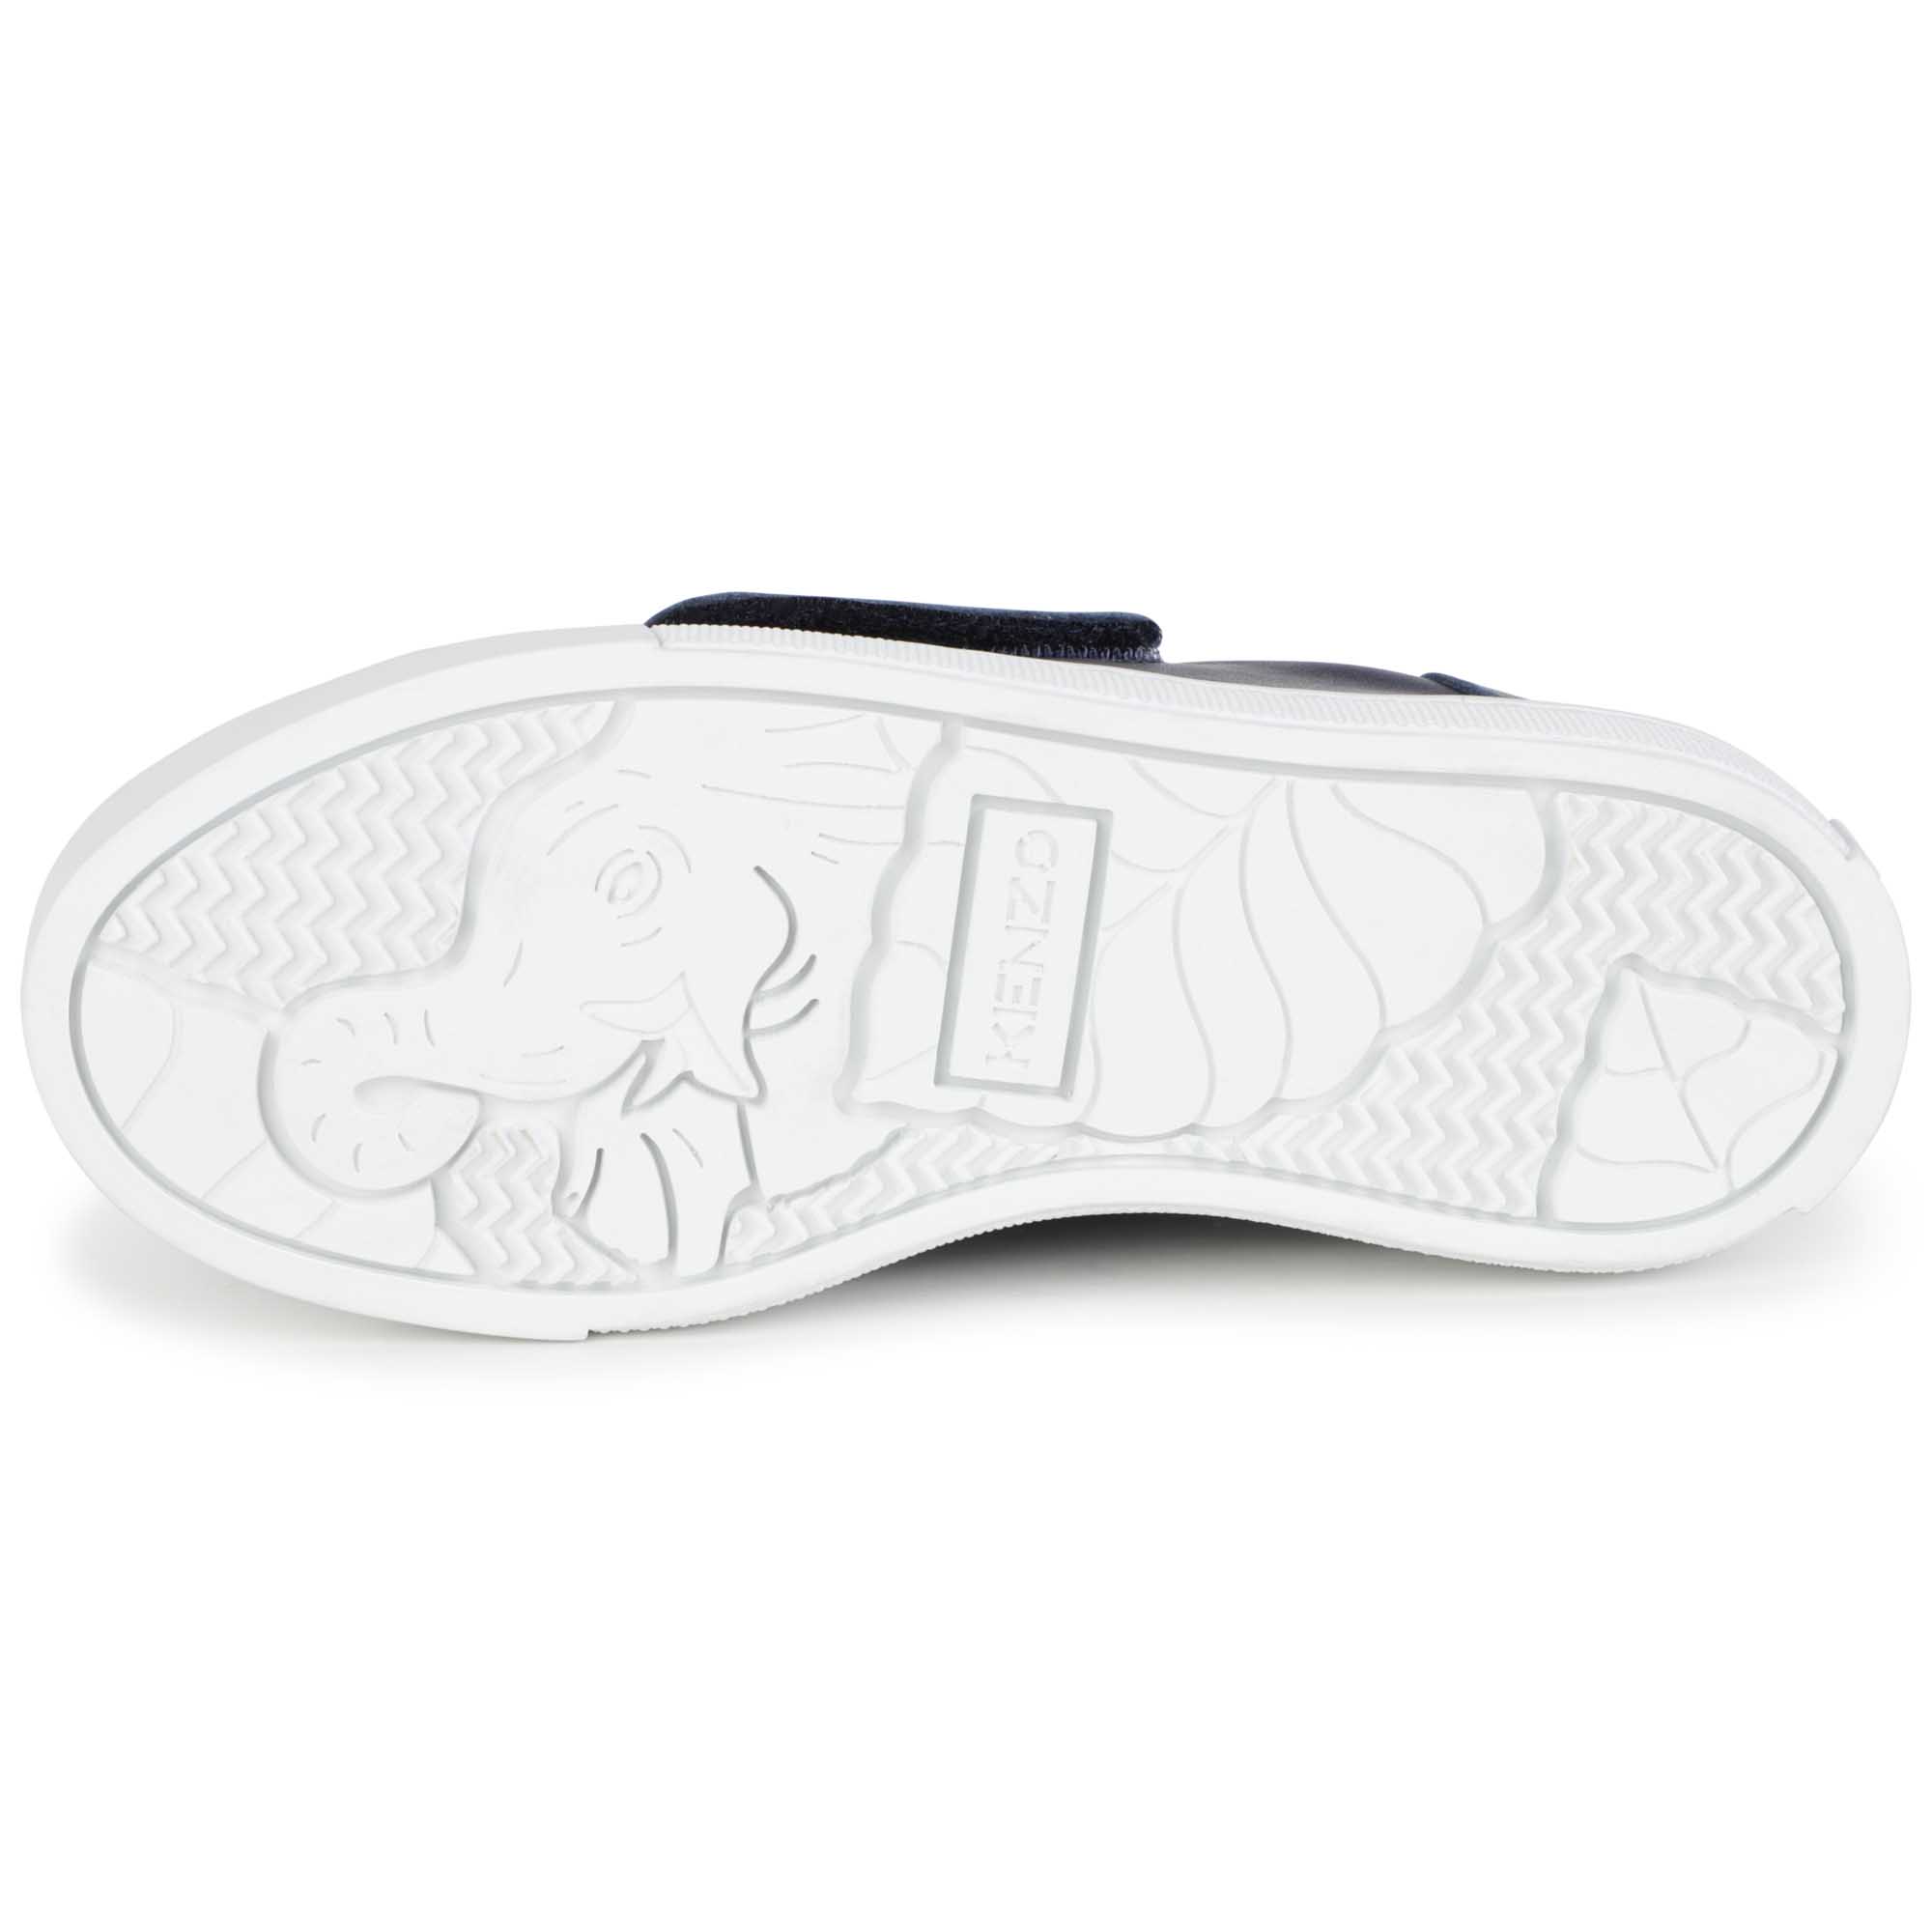 Kotora Velcro Slip-On Sneakers KENZO KIDS for UNISEX